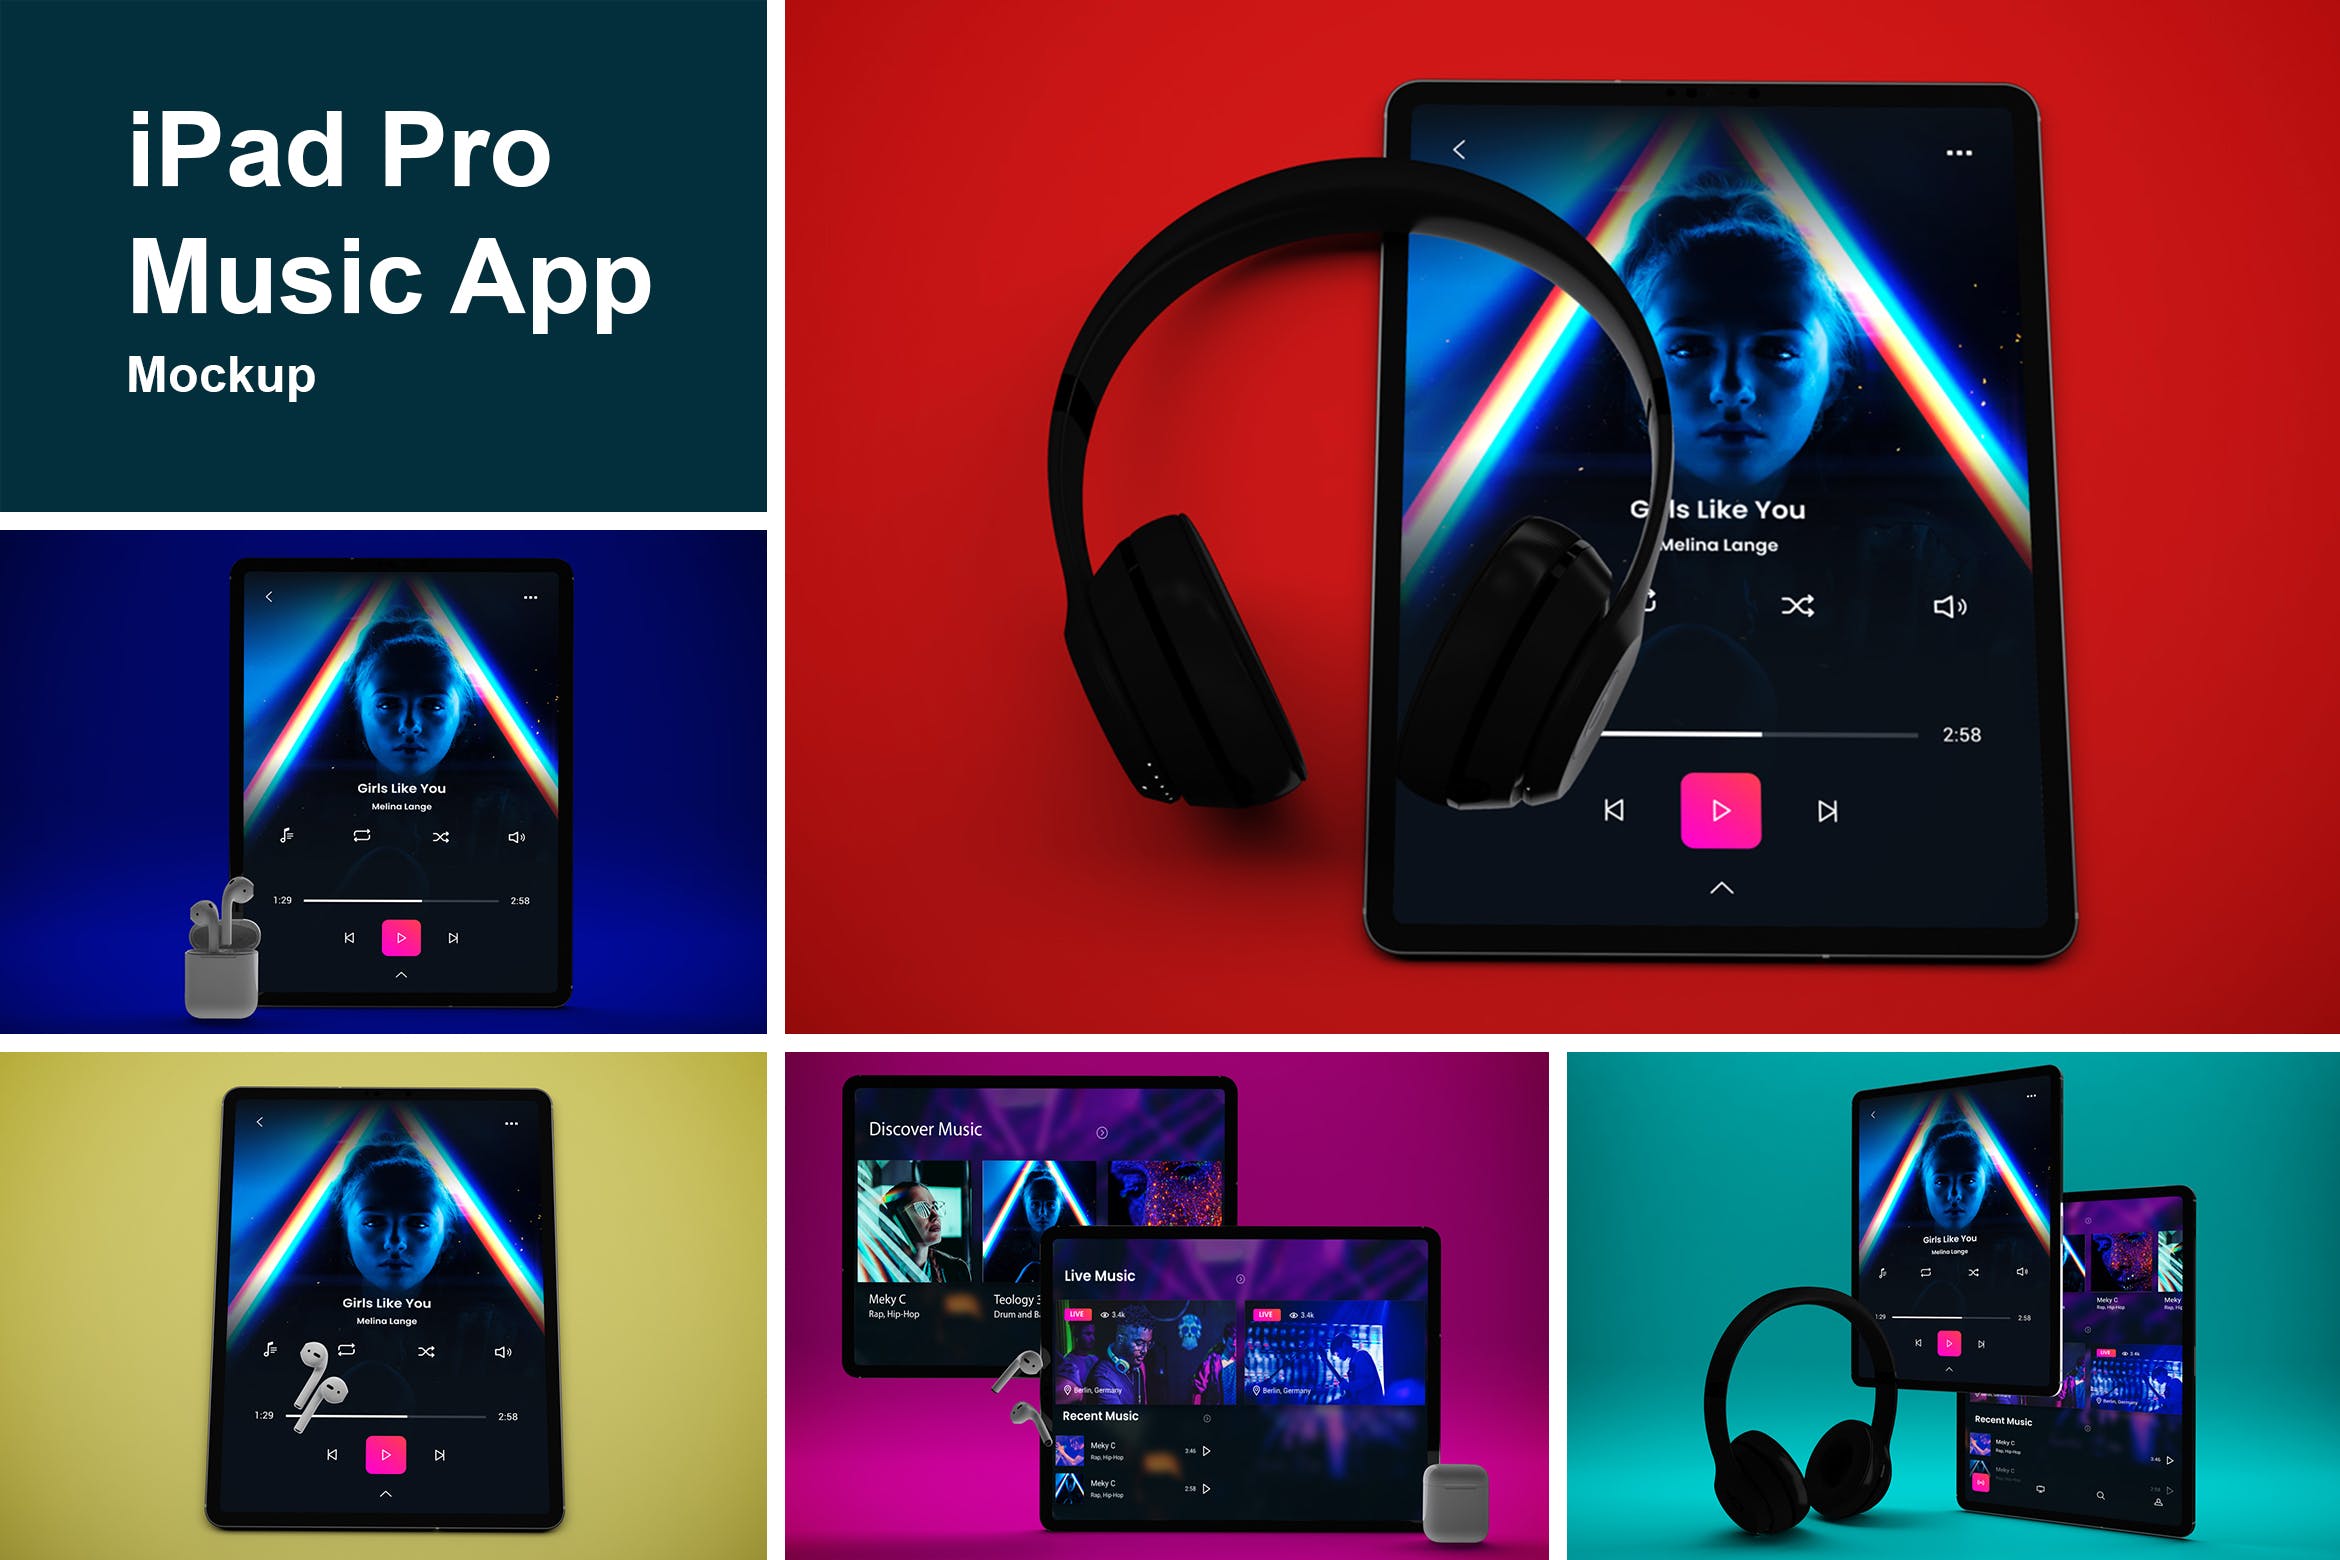 音乐APP界面设计效果图iPad Pro平板电脑样机模板 iPad Pro Music App插图